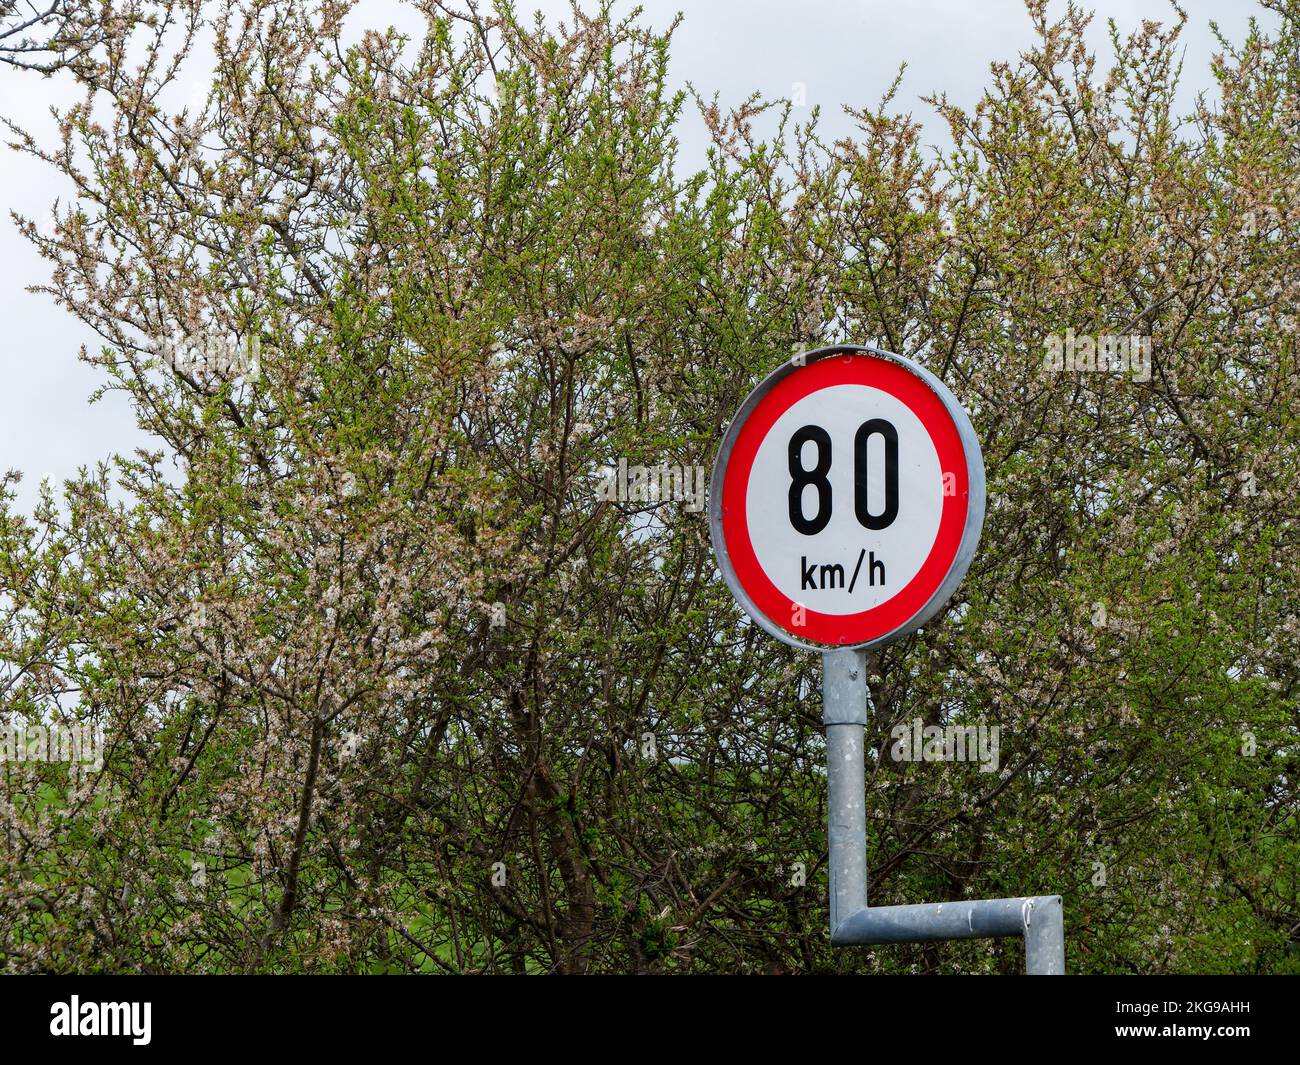 Rundschilder warnen vor Geschwindigkeitsbegrenzungen, Bäume. Das Tempolimit beträgt 80 km h. Schild in der Nähe von Bäumen Stockfoto